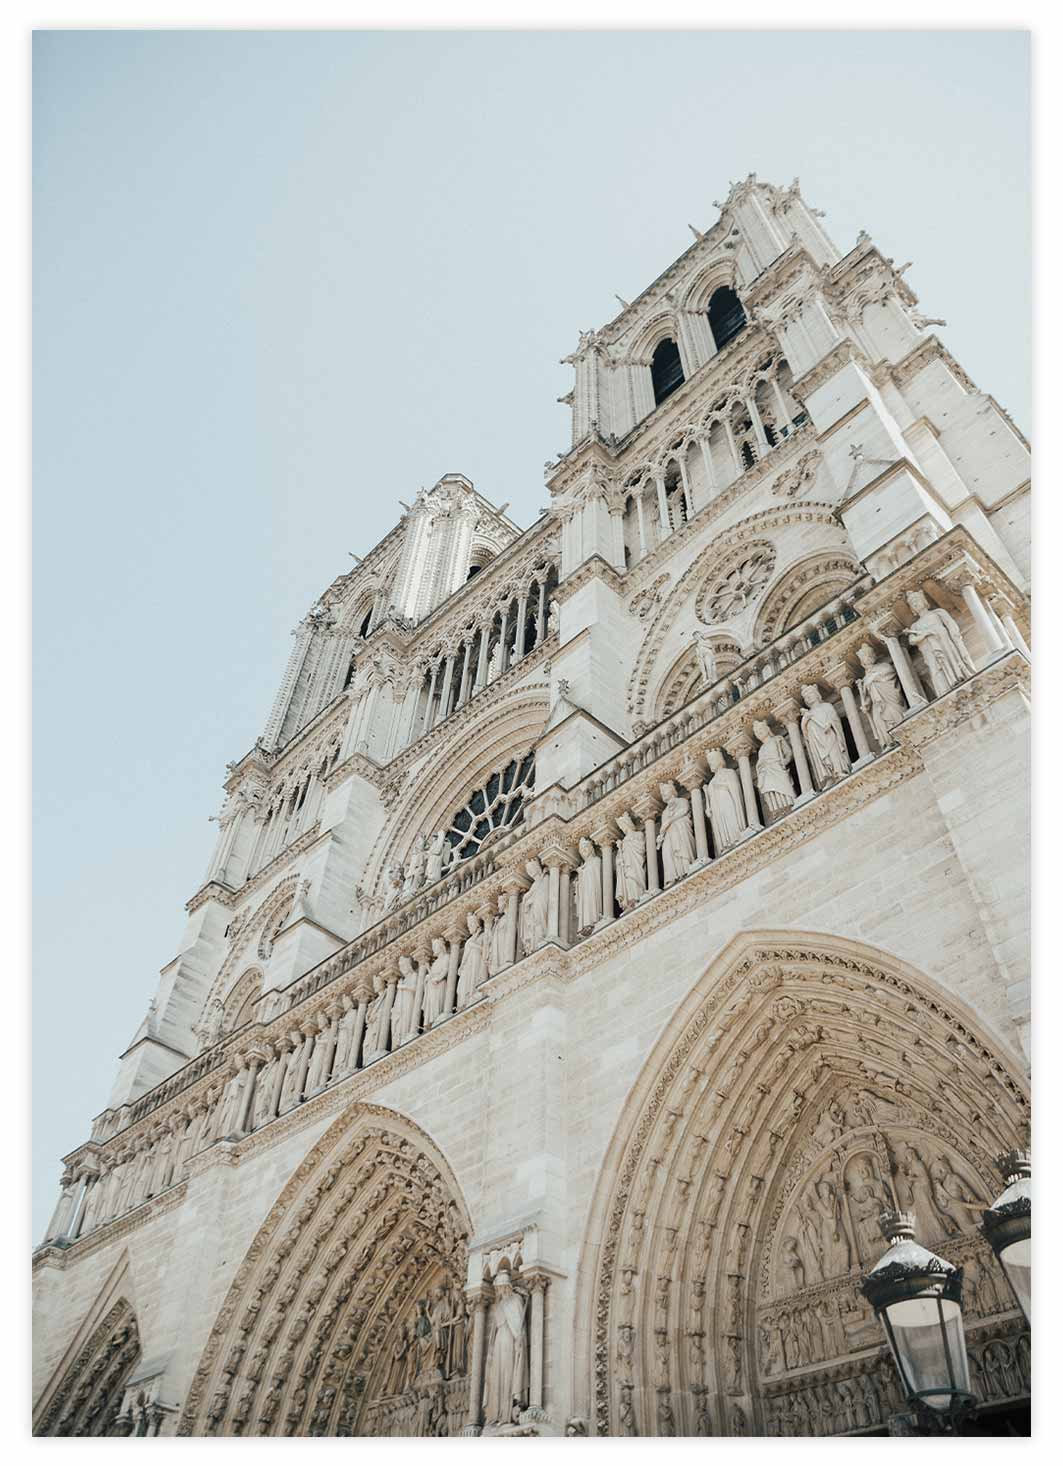 Notre-Dame de Paris Poster